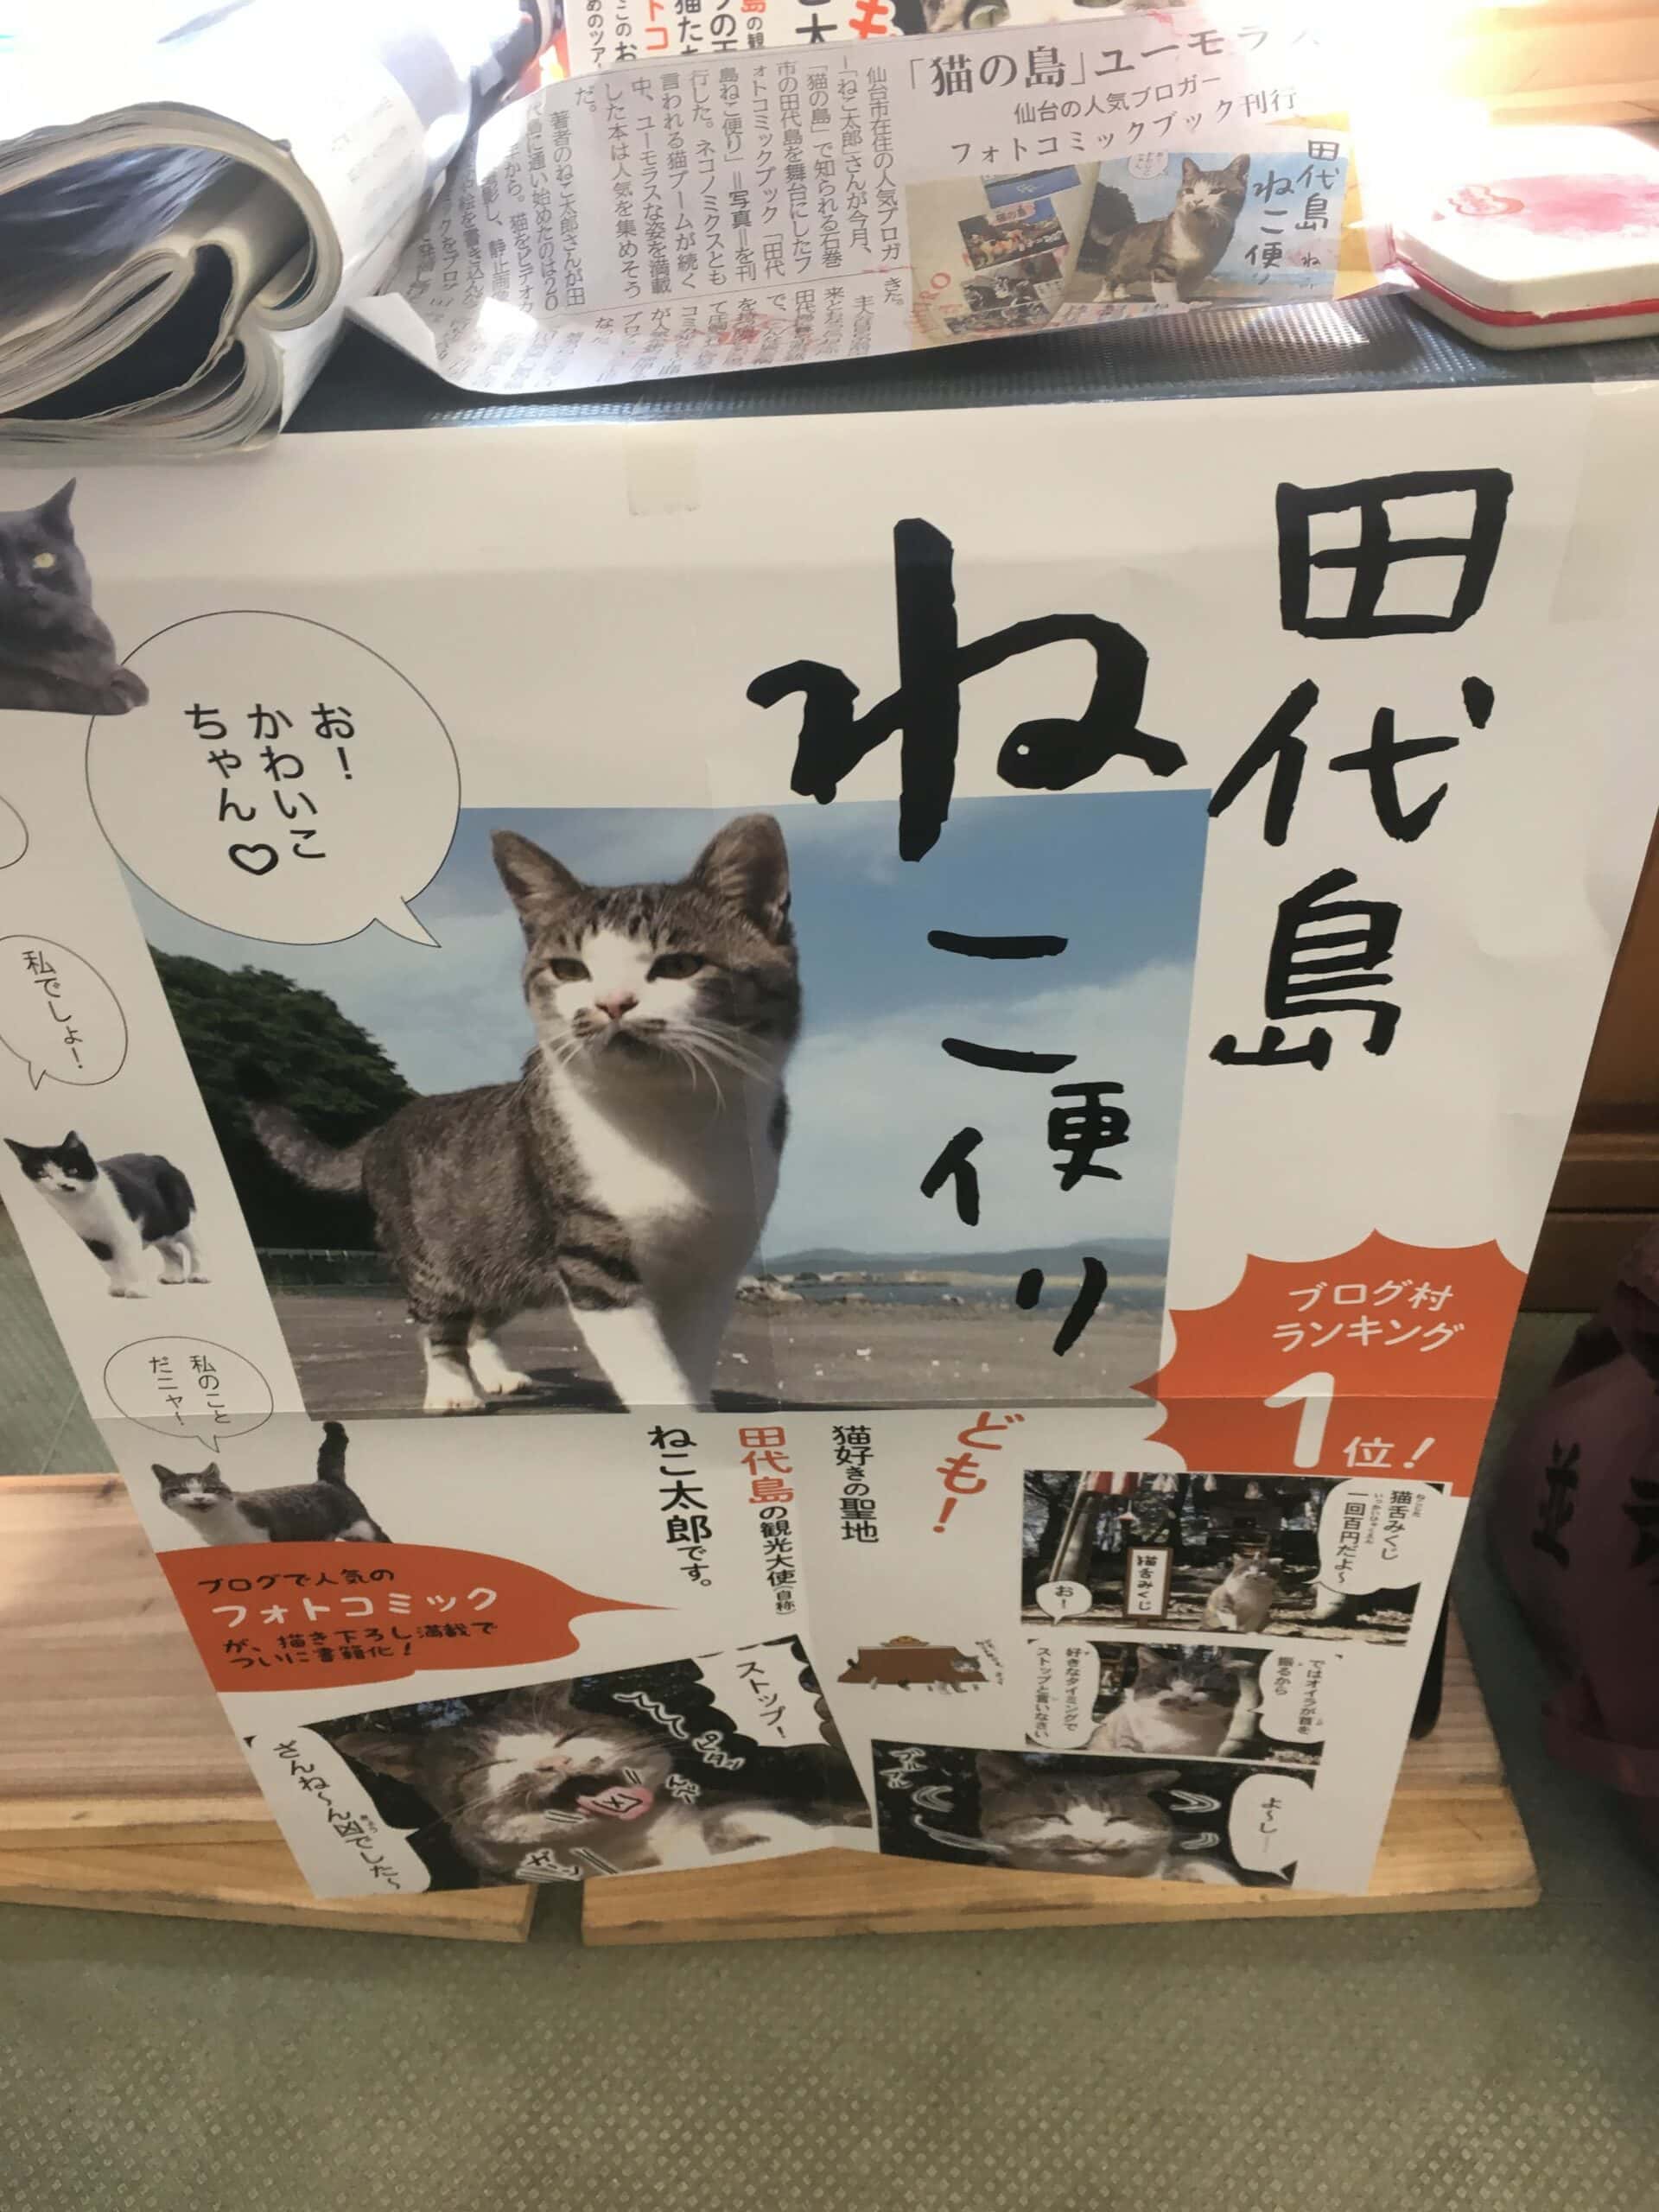 ทาชิโร่จิม่า ฟื้นเมืองด้วยมวลแมว